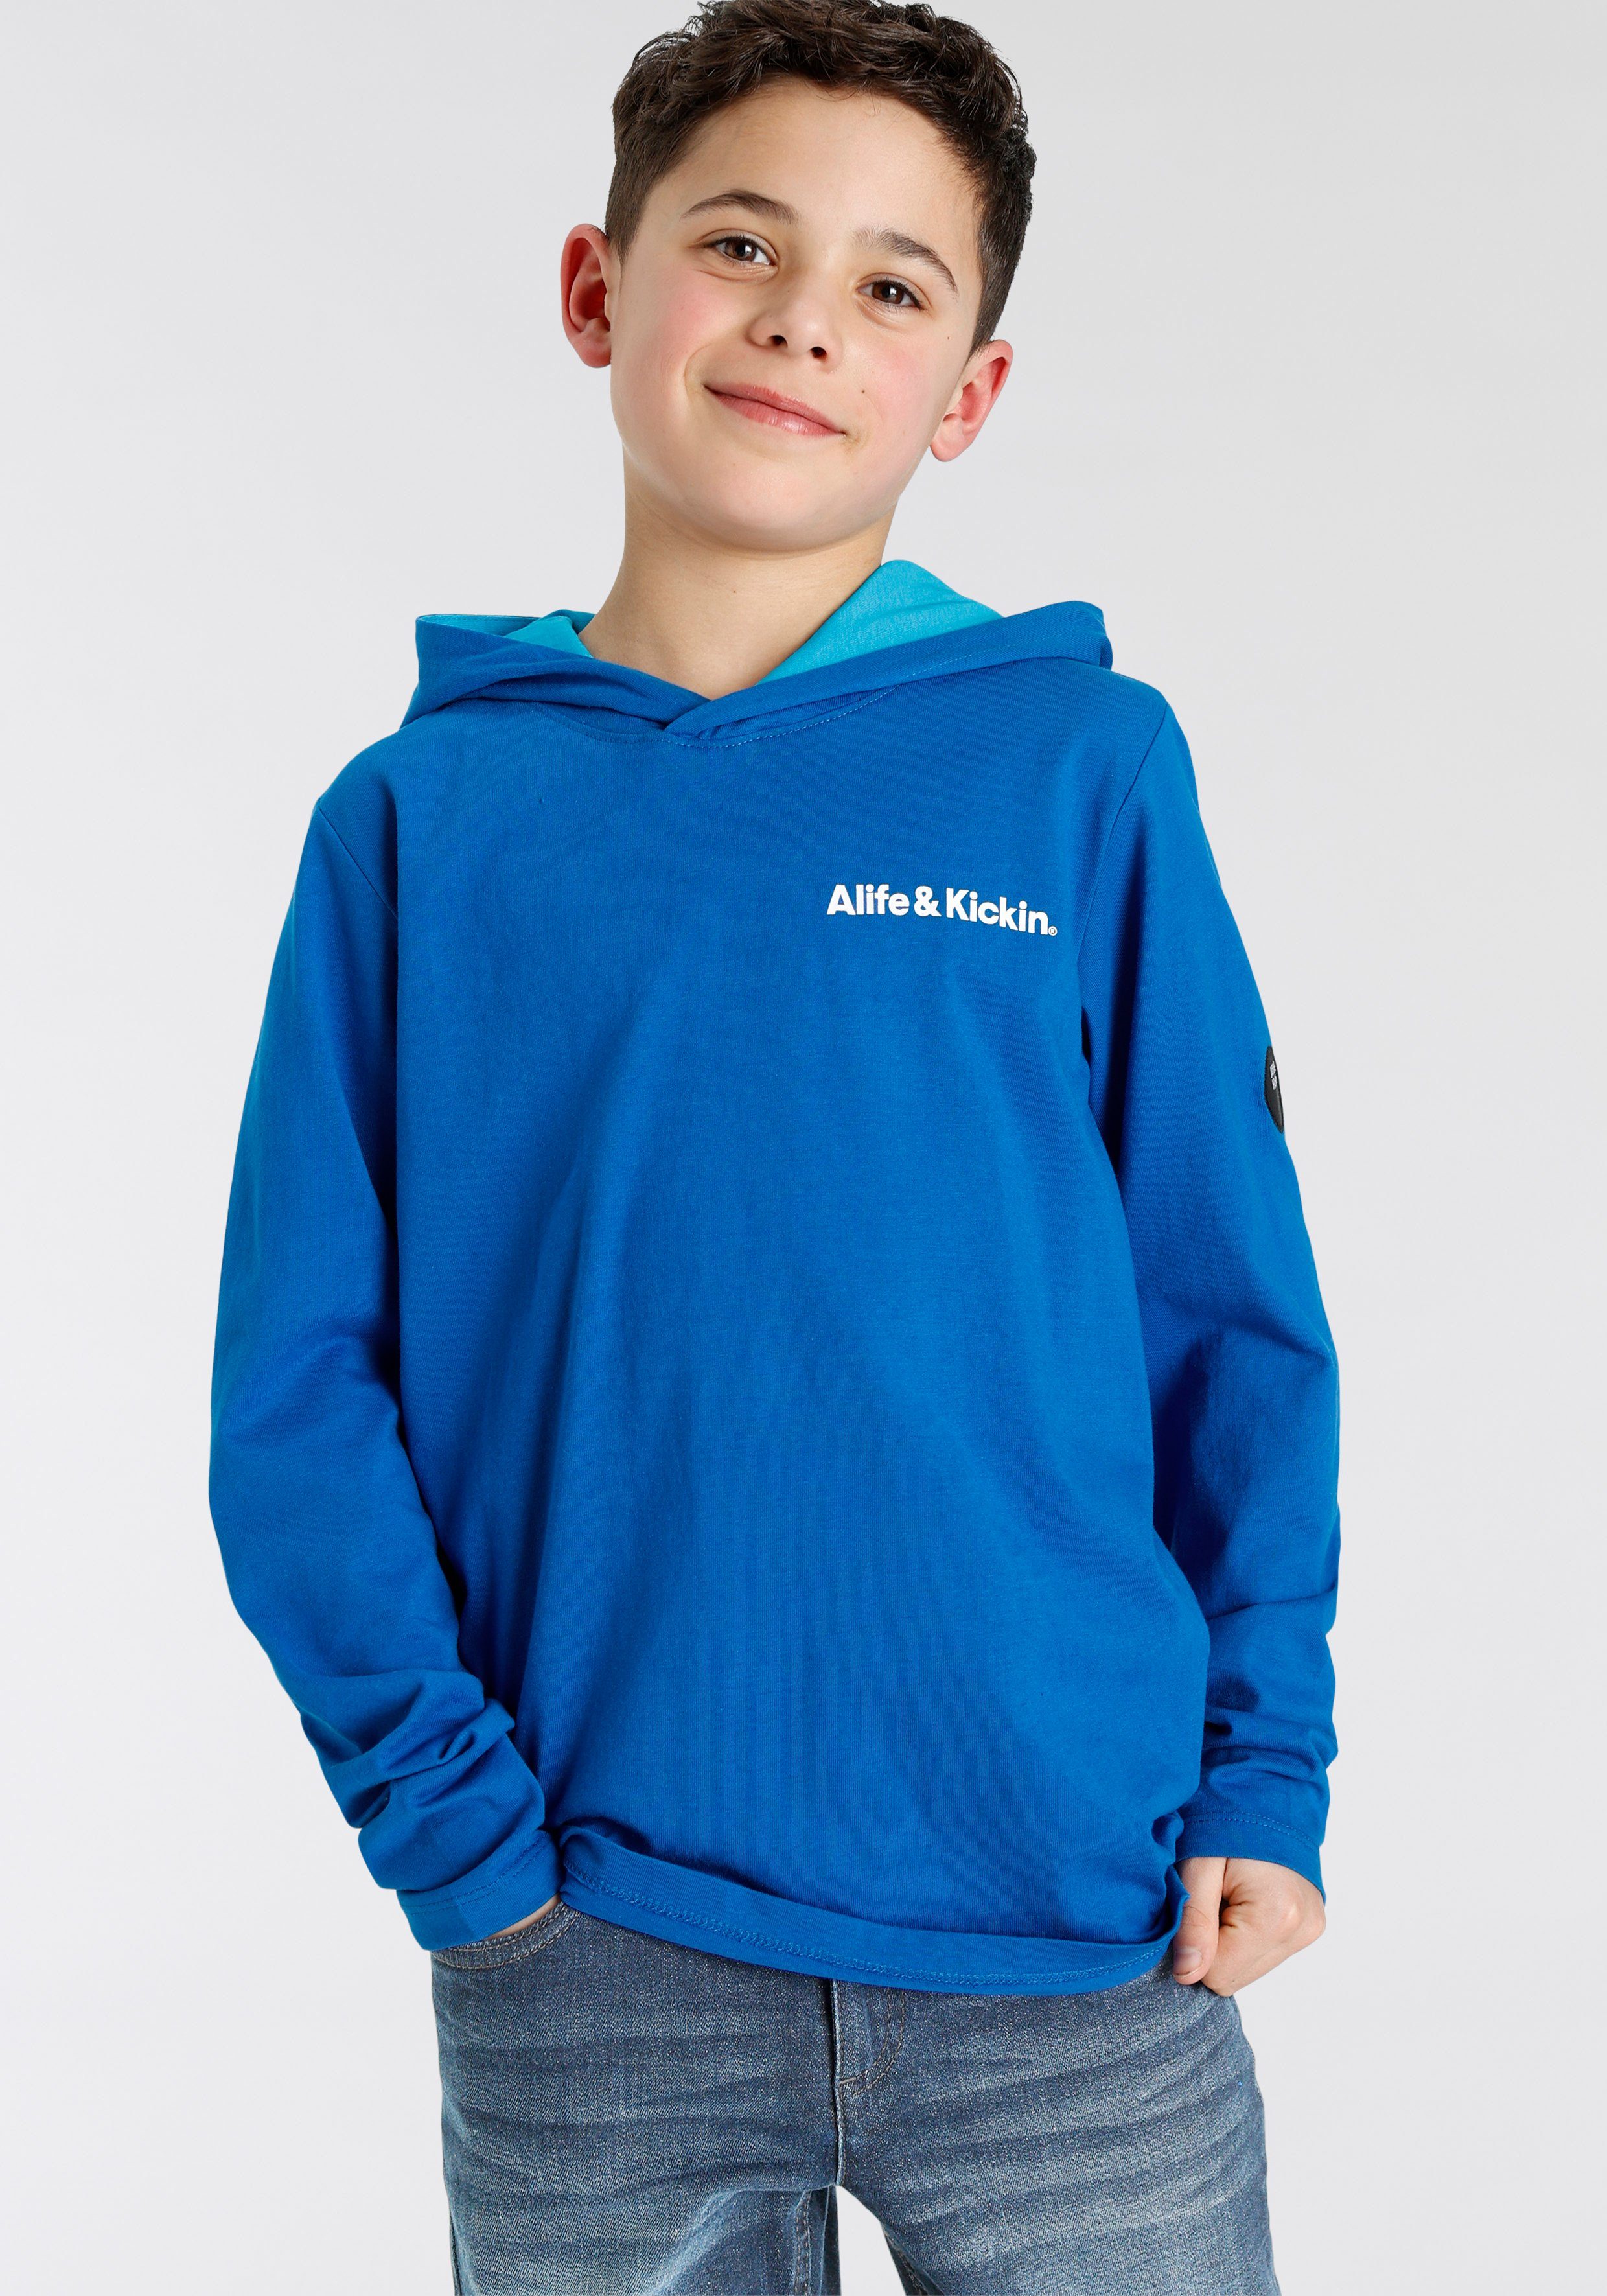 Rückenprint NEUE & MARKE! modischer Kapuzenshirt Farbverlauf, im Kickin Alife Logo-Print